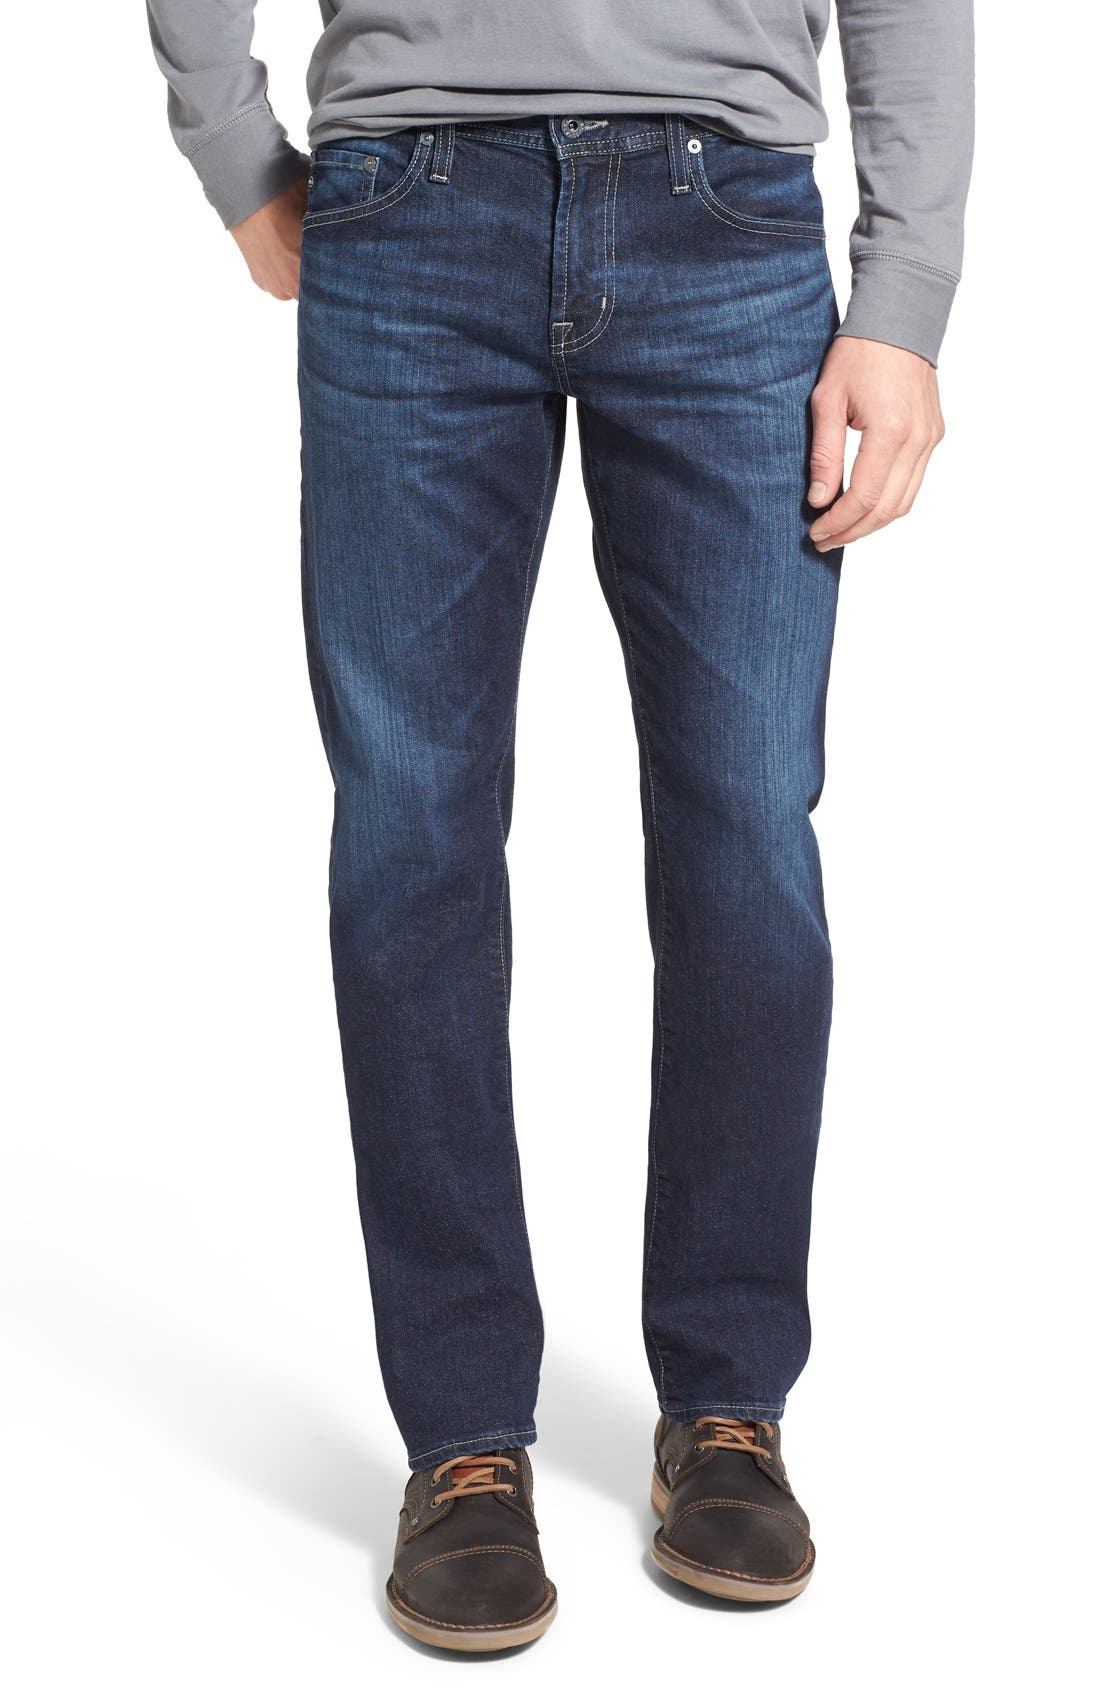 nordstrom protege jeans